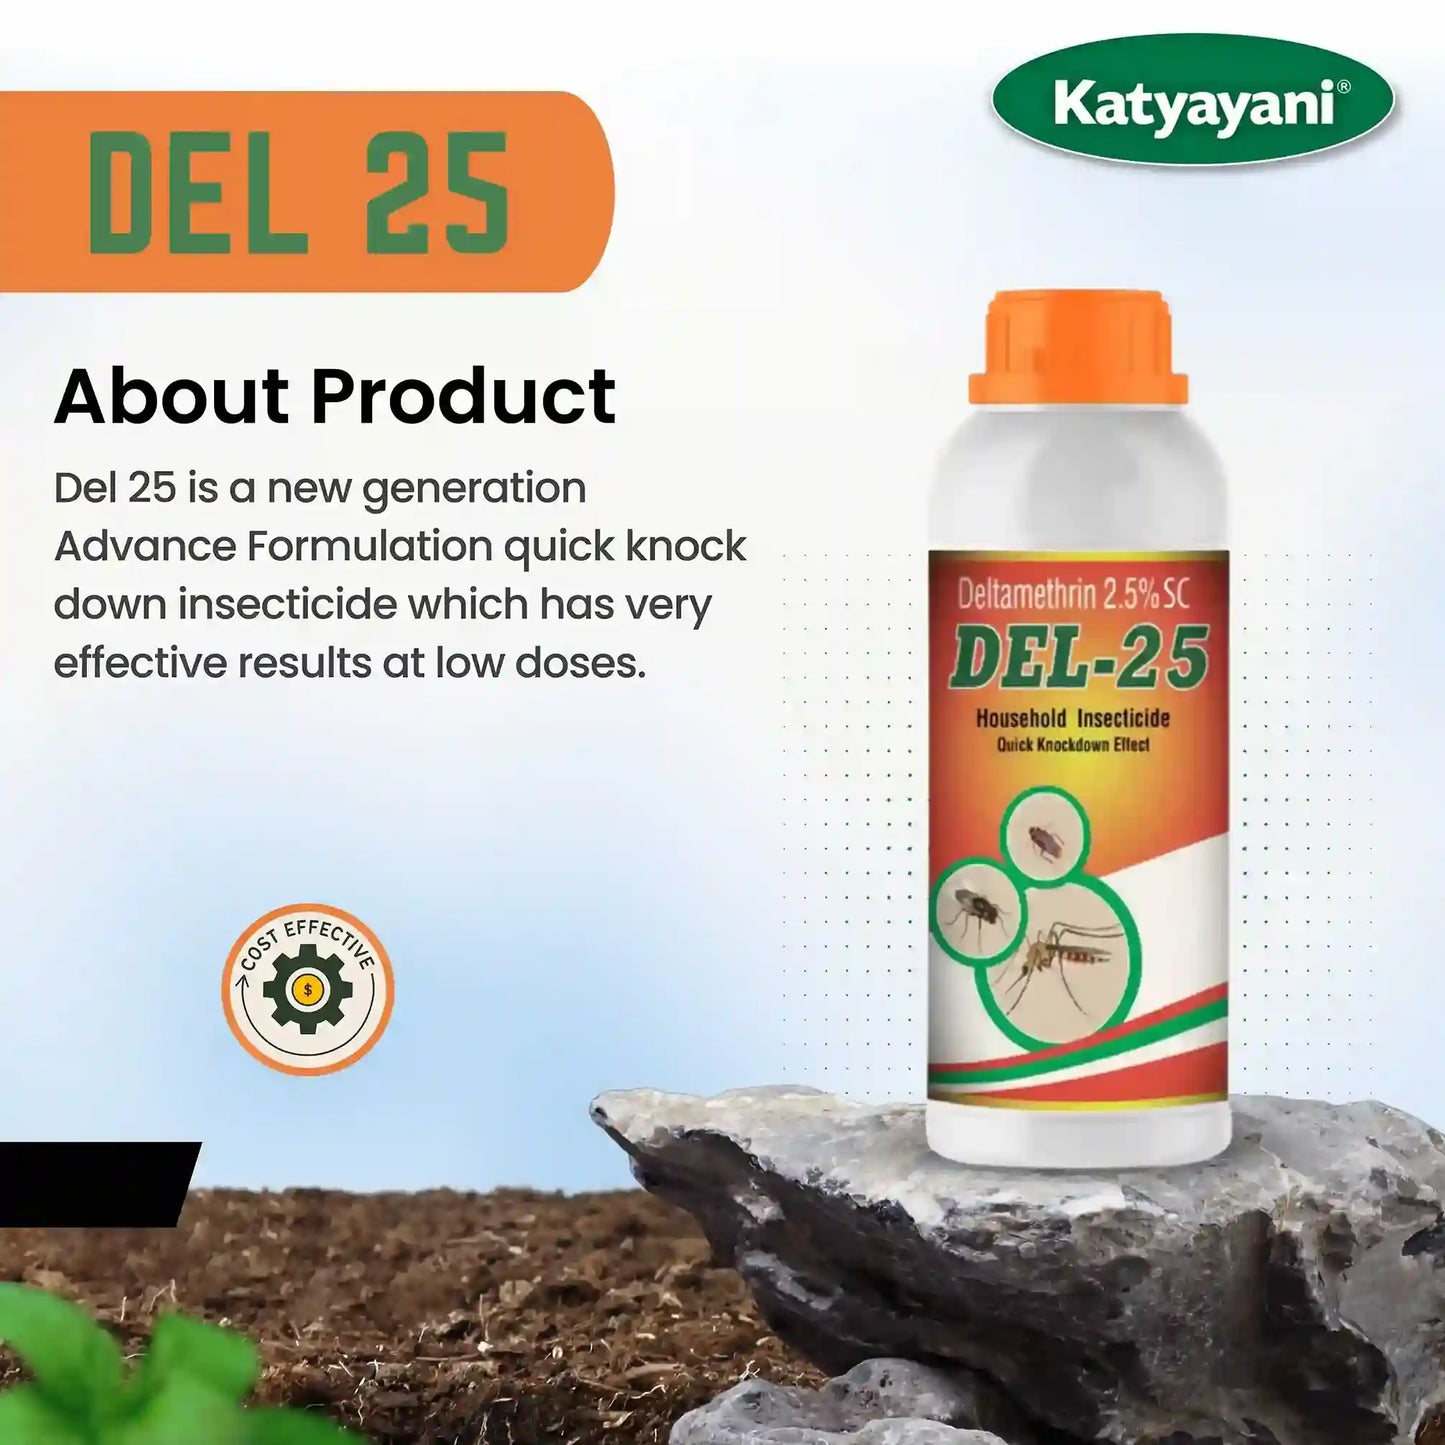 katyayani Deltamethrin 2.5% SC DEL-25 - Insecticide